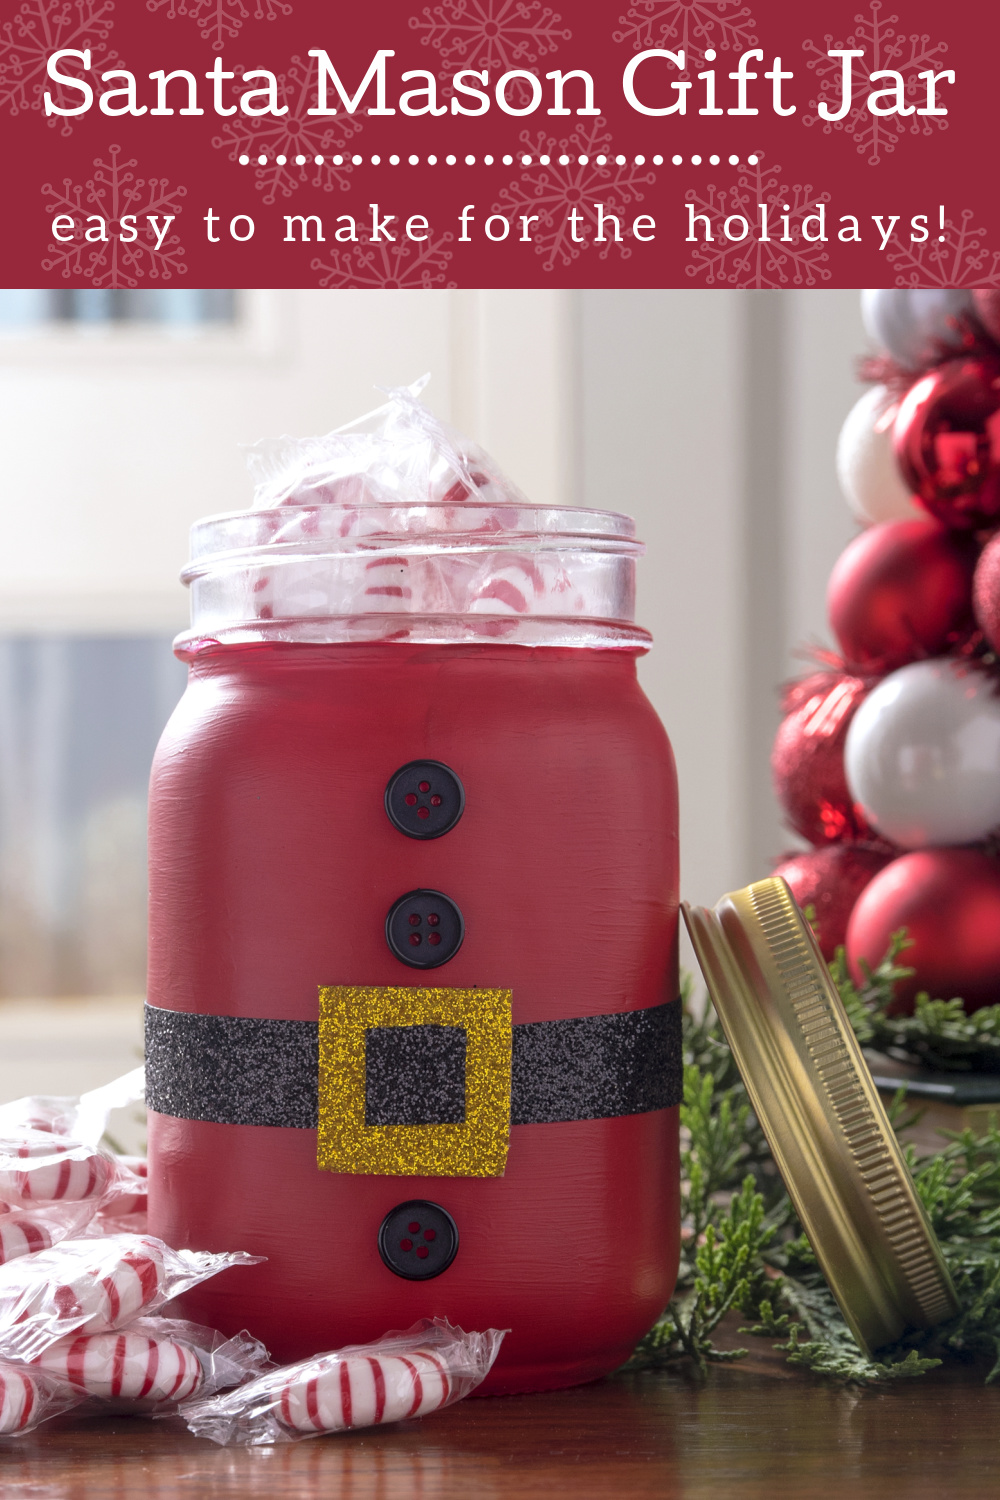 Santa Mason Gift Jar